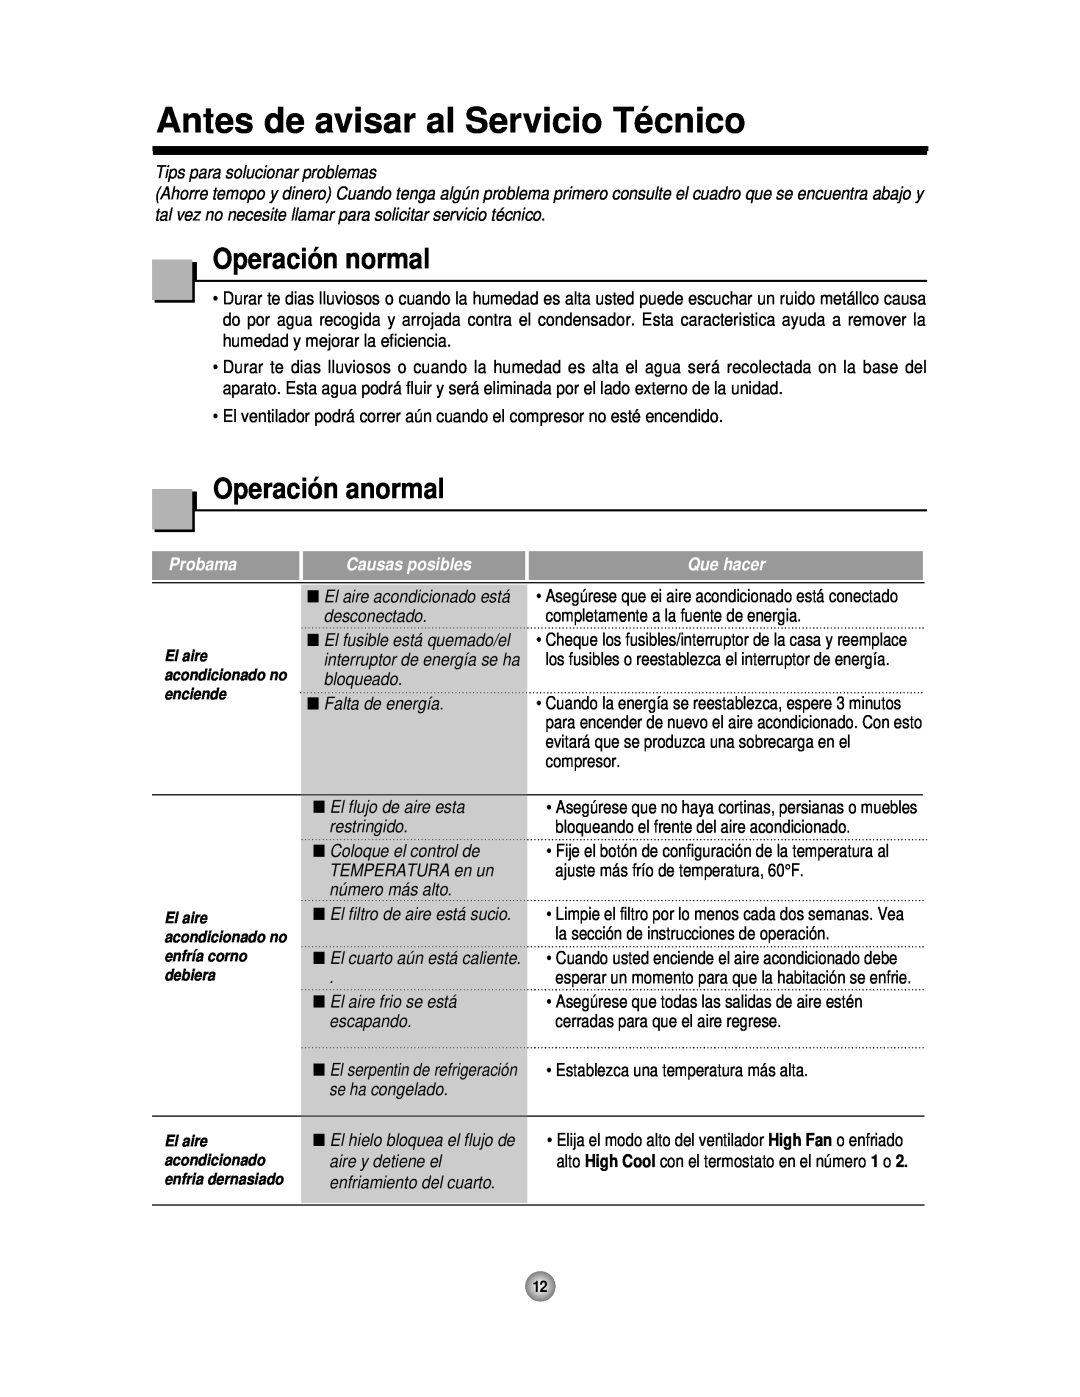 Friedrich CP06 manual Antes de avisar al Servicio Técnico, Operación normal, Operación anormal, Probama, Causas posibles 